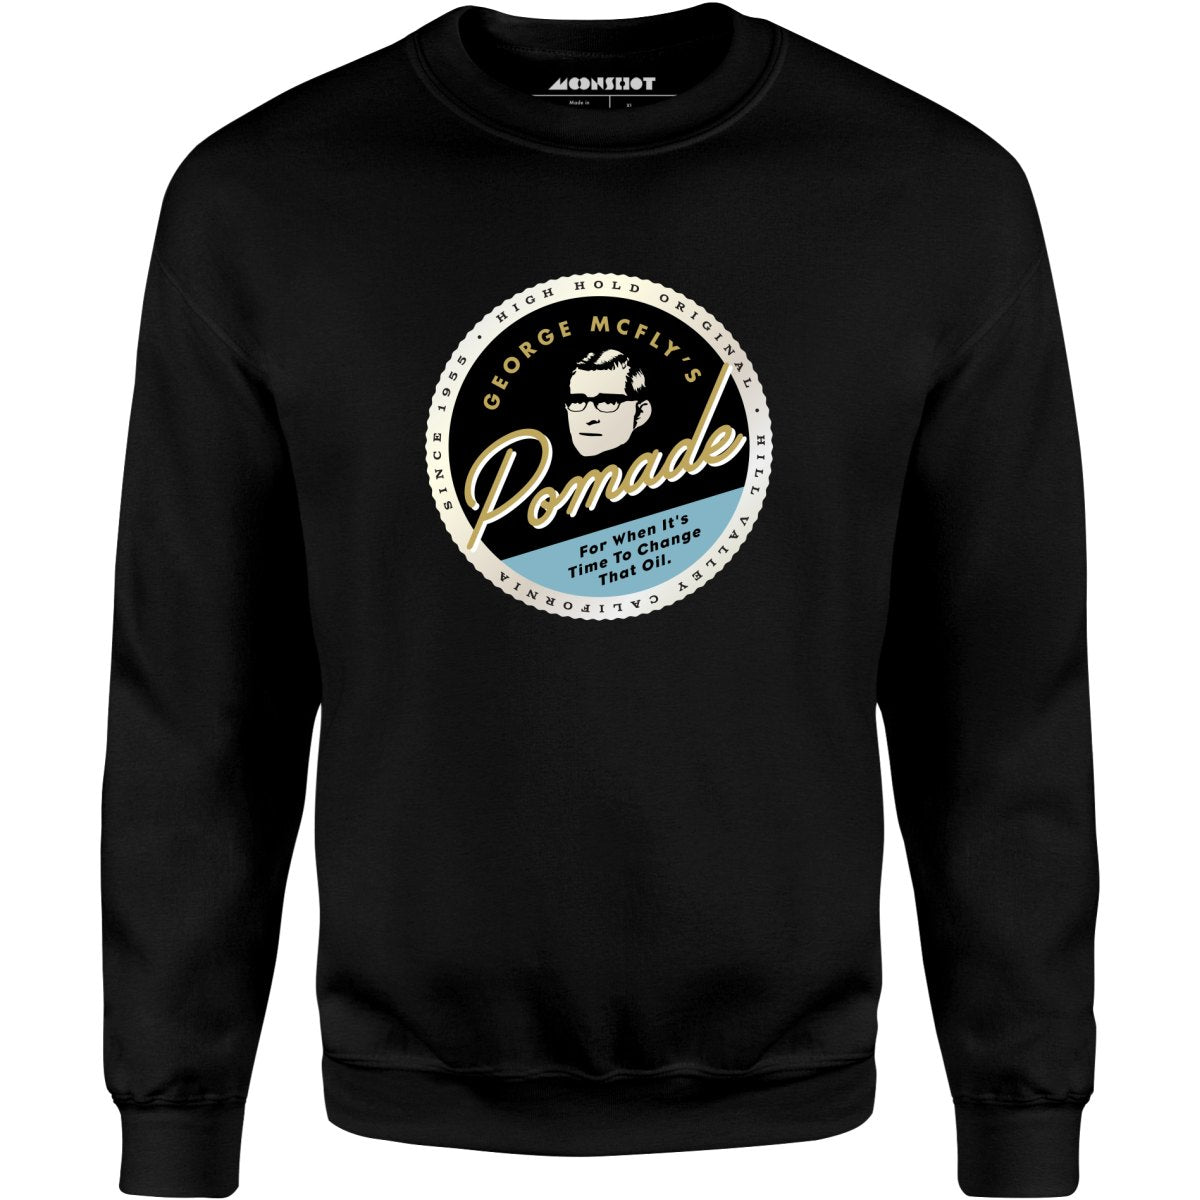 George McFly's Pomade - Unisex Sweatshirt